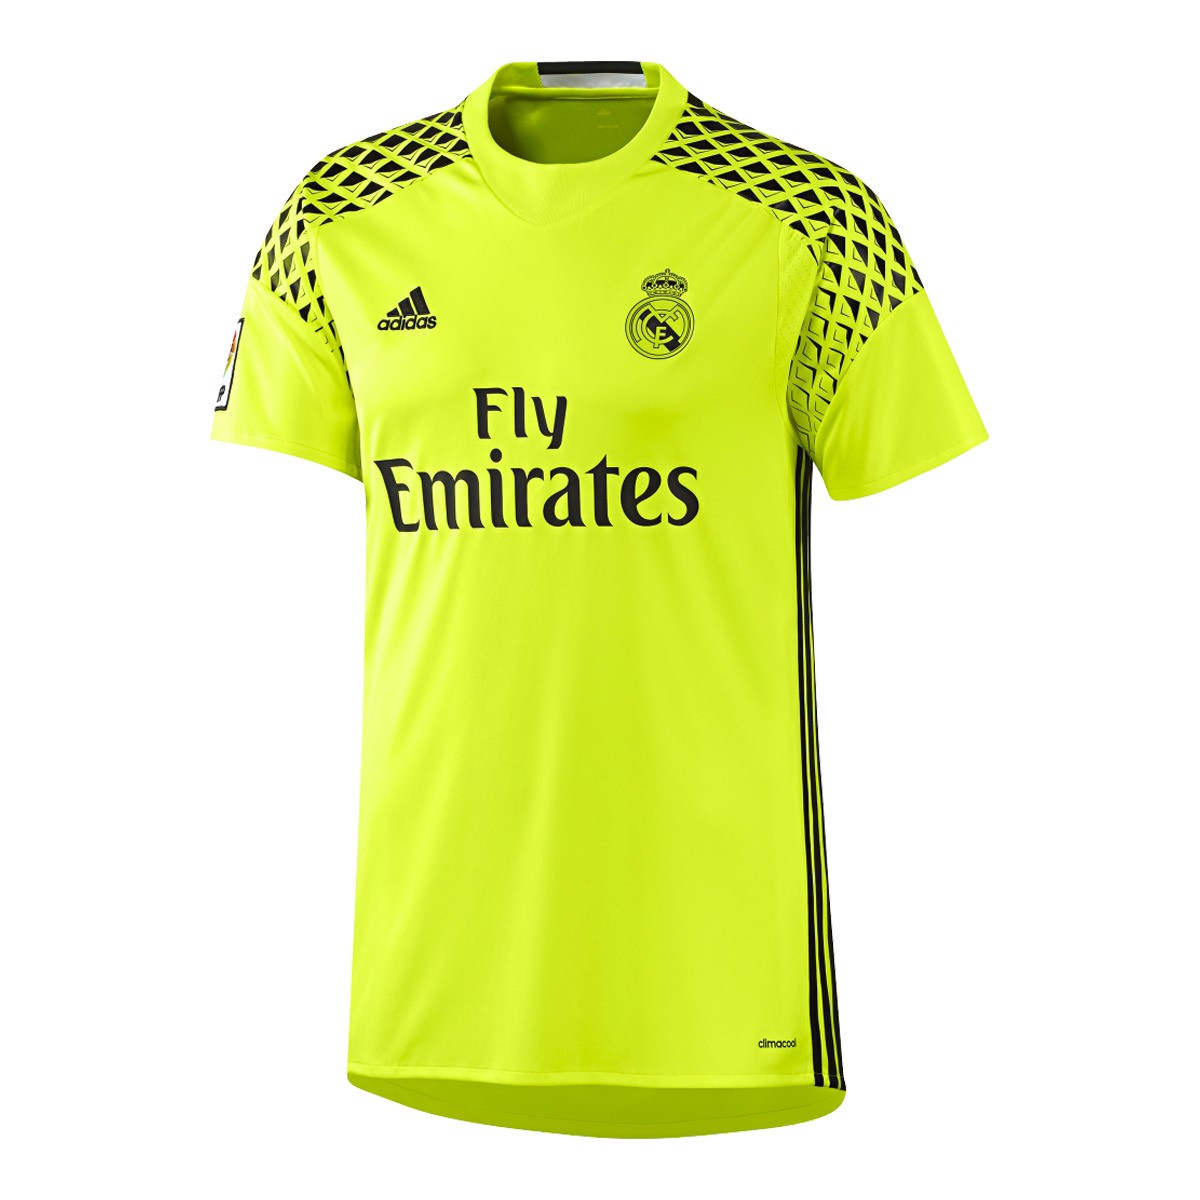 Ultima portero 2016/17 | camiseta amarillo portero oficial Real | Adidas Real Madrid